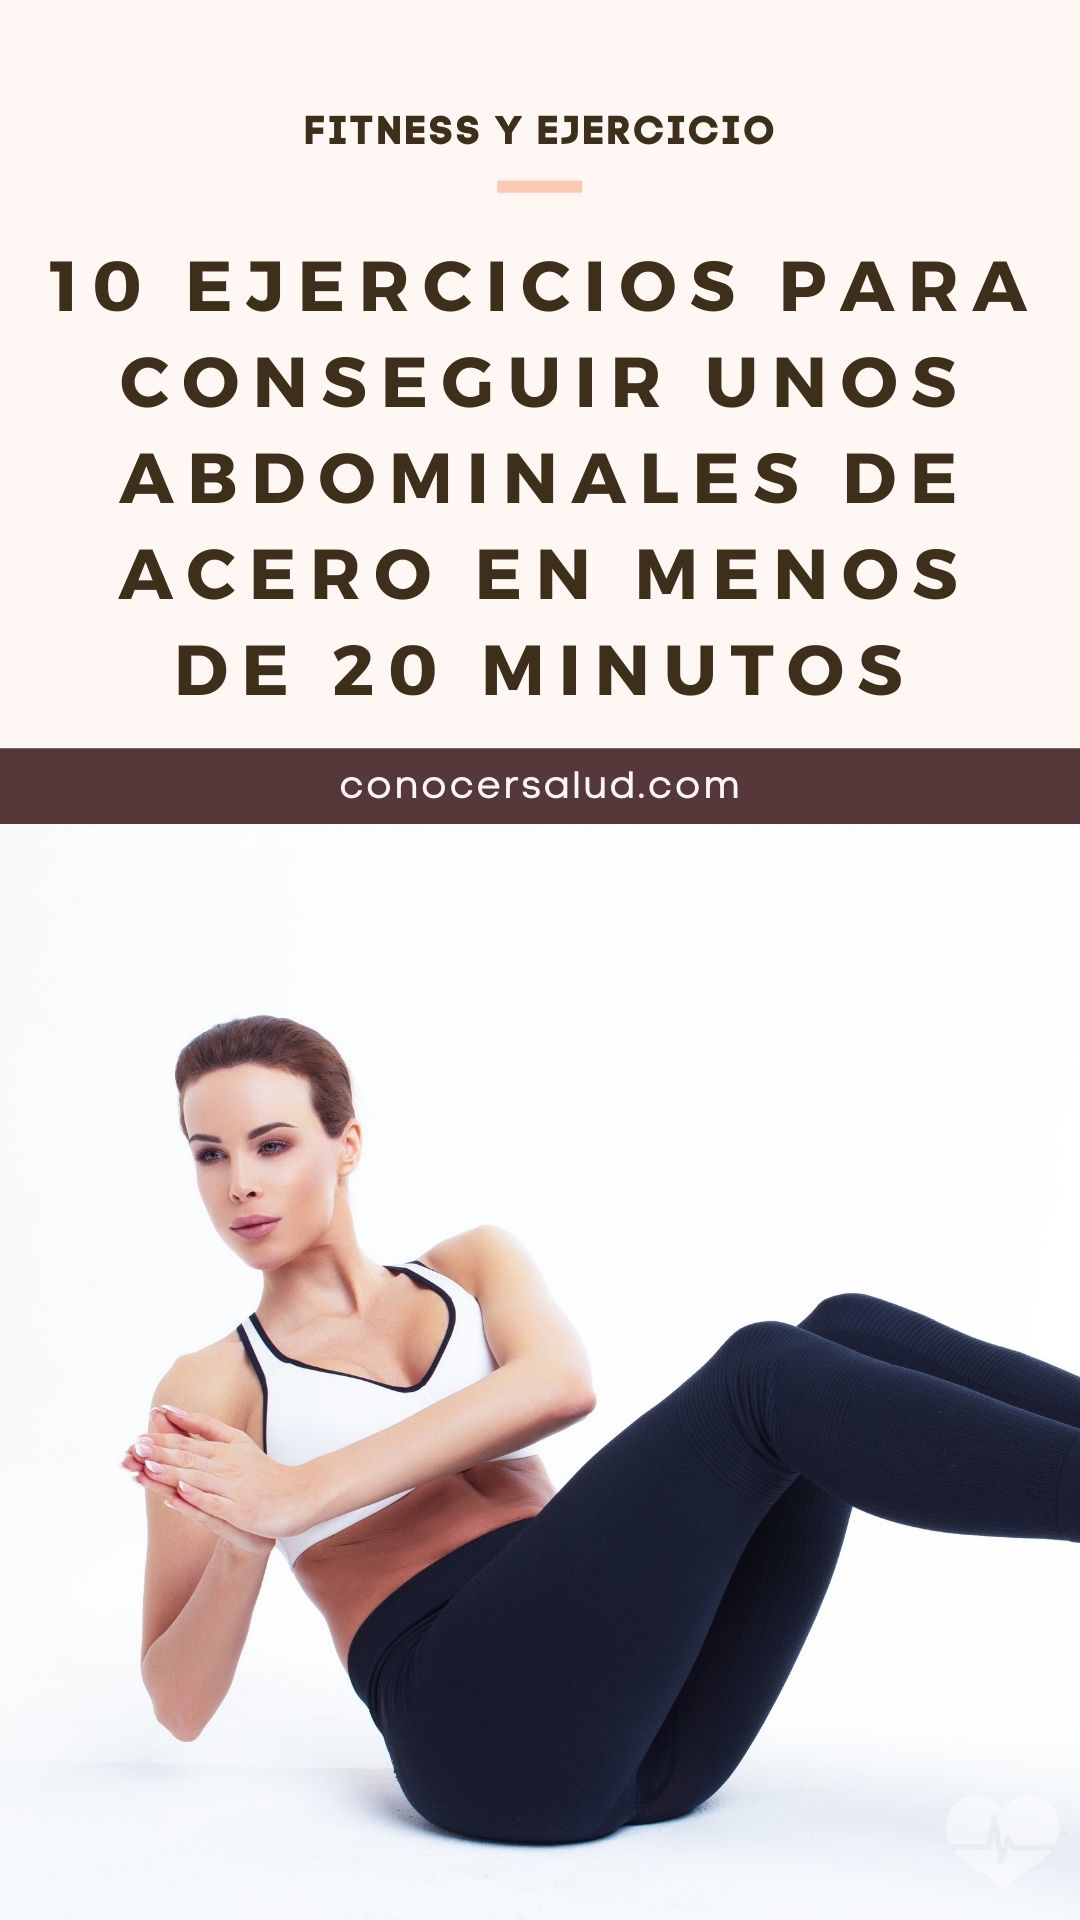 10 ejercicios para conseguir unos abdominales de acero en menos de 20 minutos